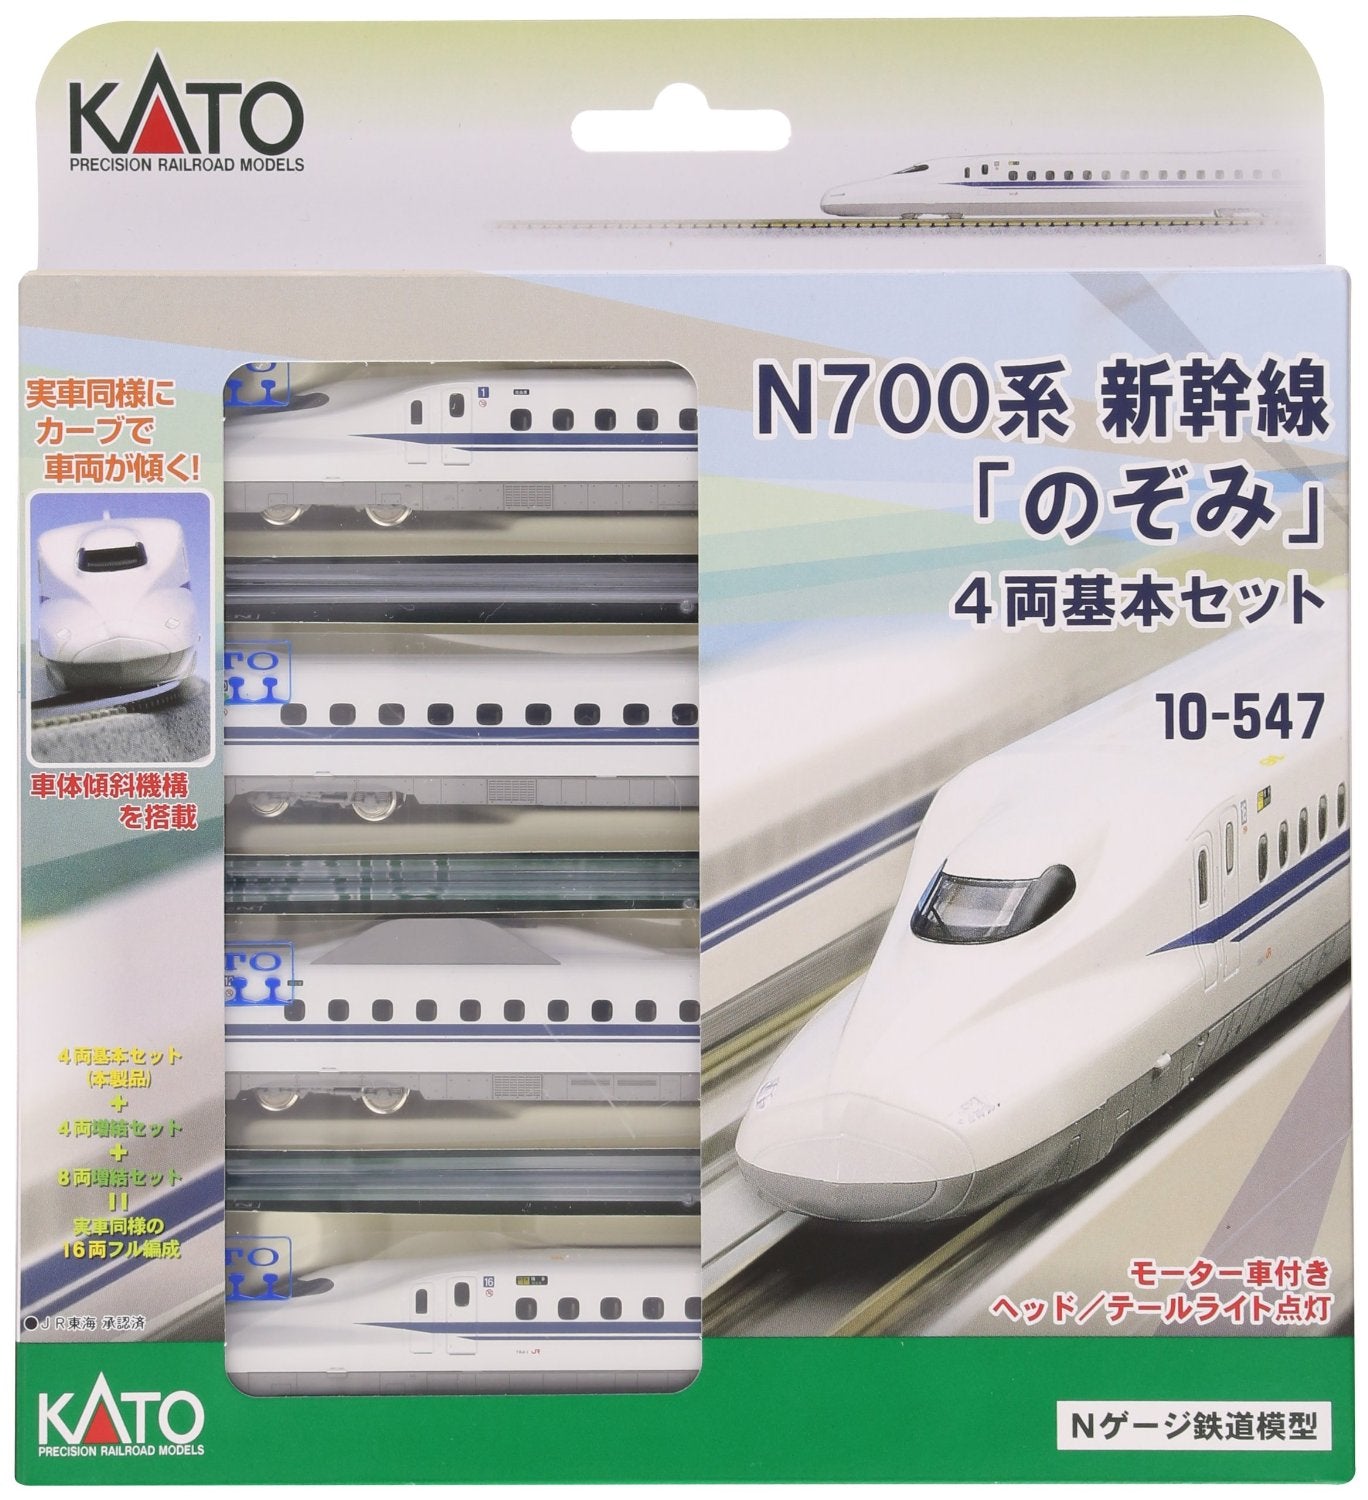 10-547 Shinkansen Series N700 Nozomi Basic